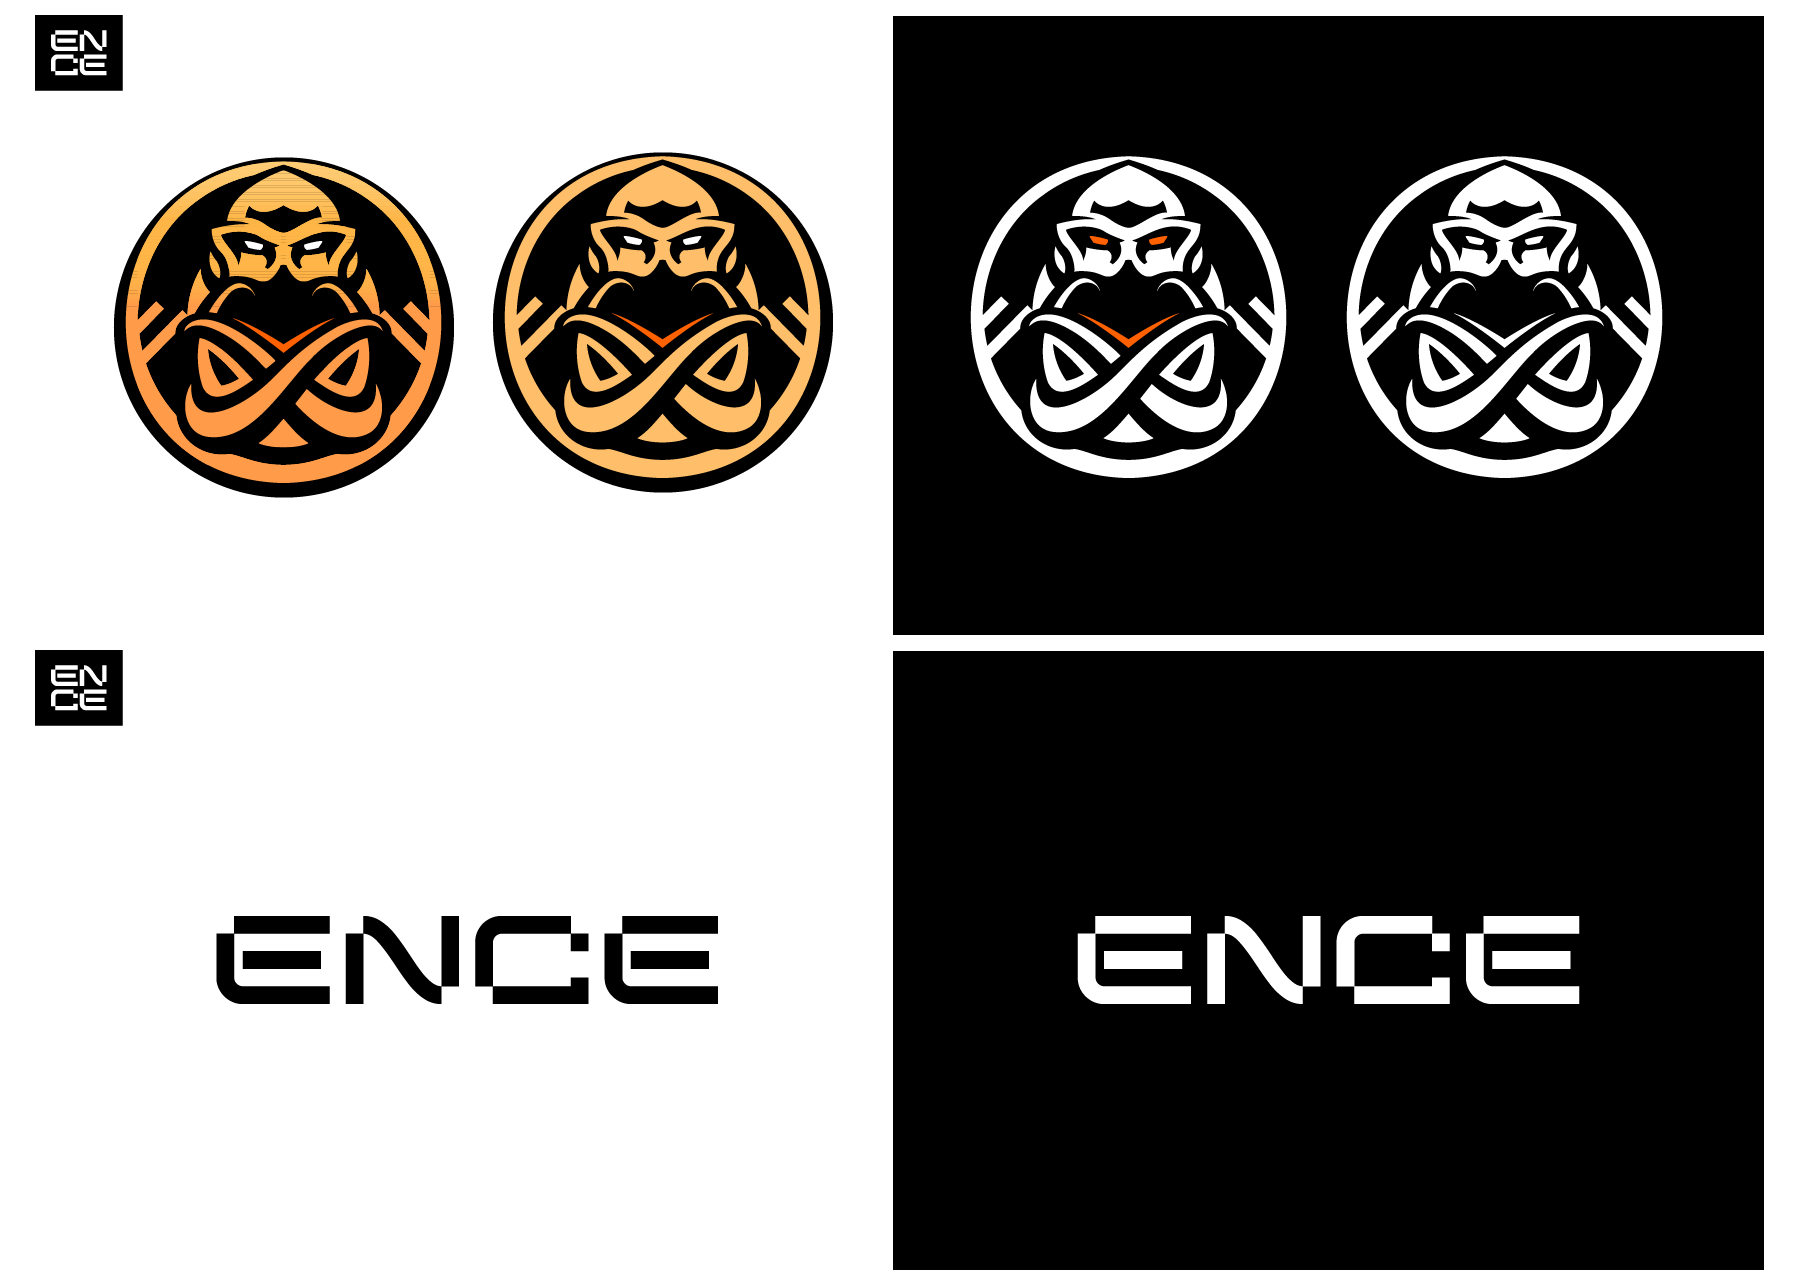 Väreiltään ja muodoiltaan uudistettu Enkelados-logo ja aukikirjoitettu logo.